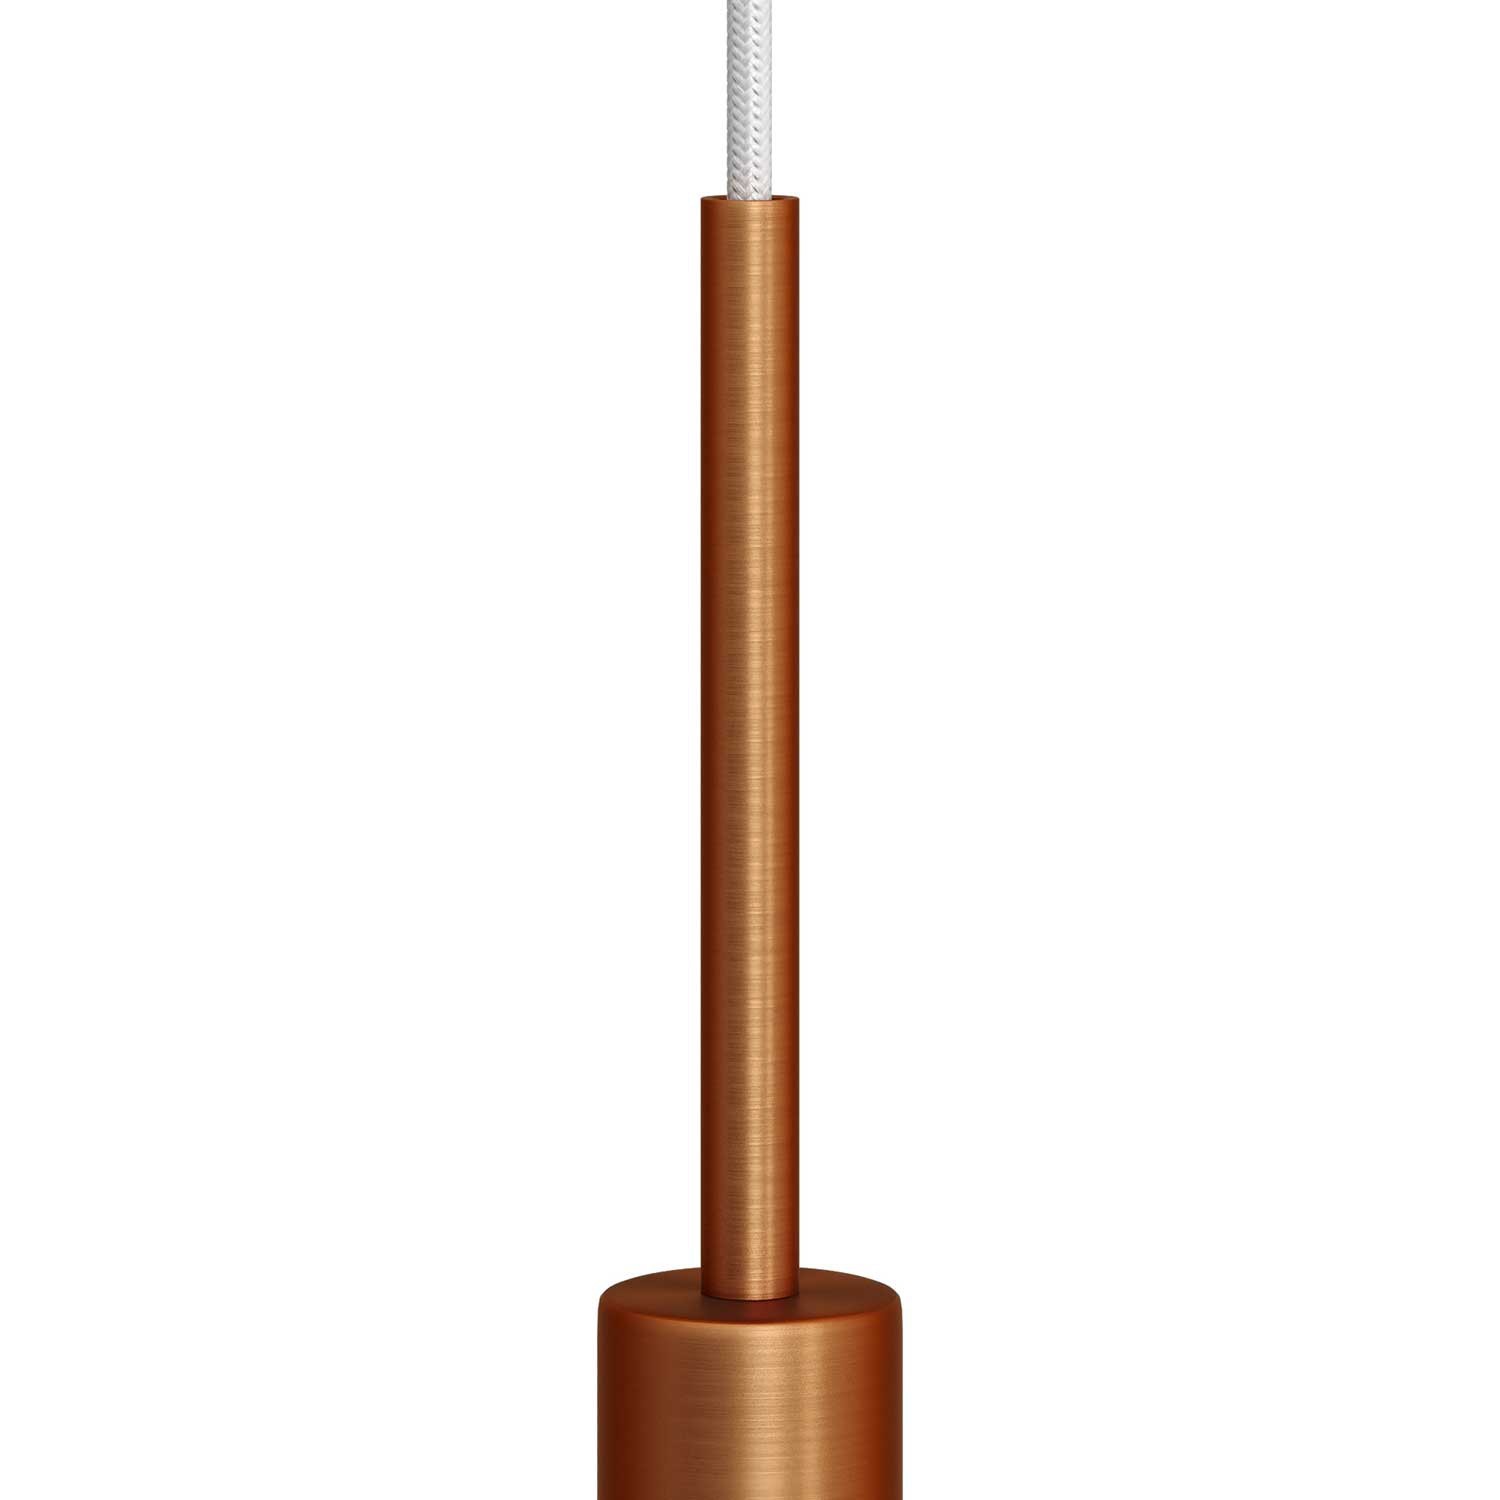 Abrazadera metálica cilíndrica de 15 cm con varilla, tuerca y arandela